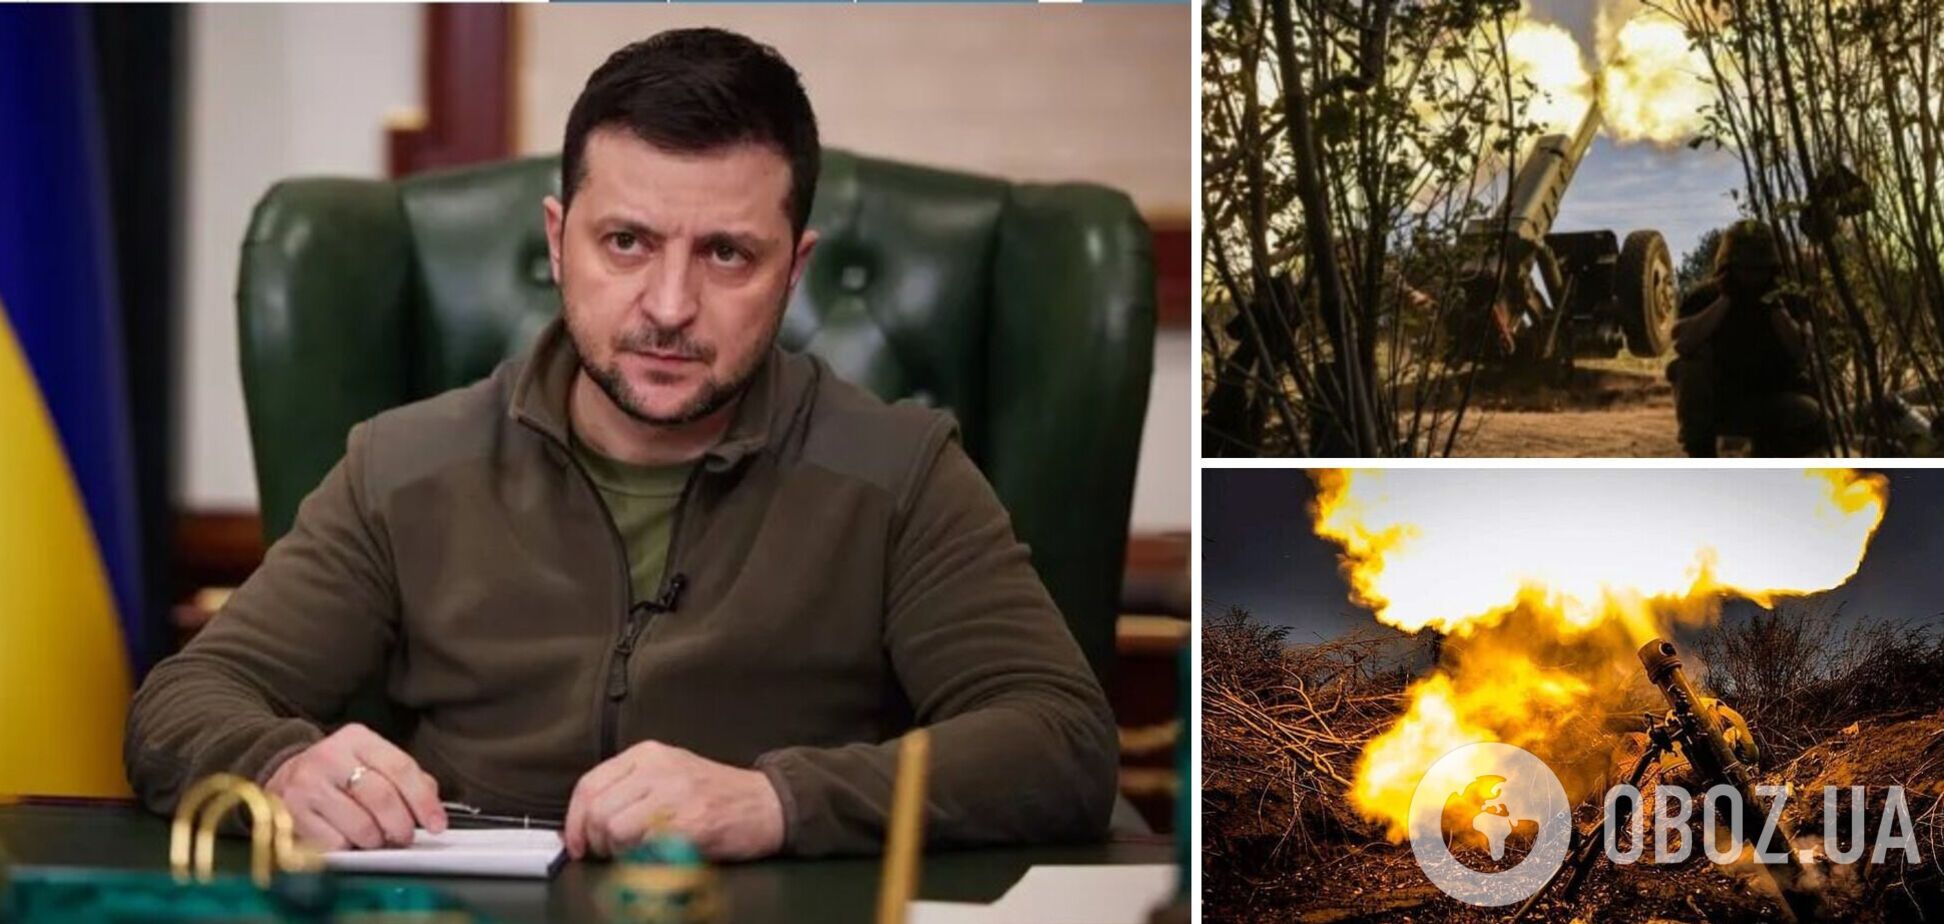 Ситуация остается самой сложной в Донецкой области, будут важные шаги по укреплению обороны, – Зеленский